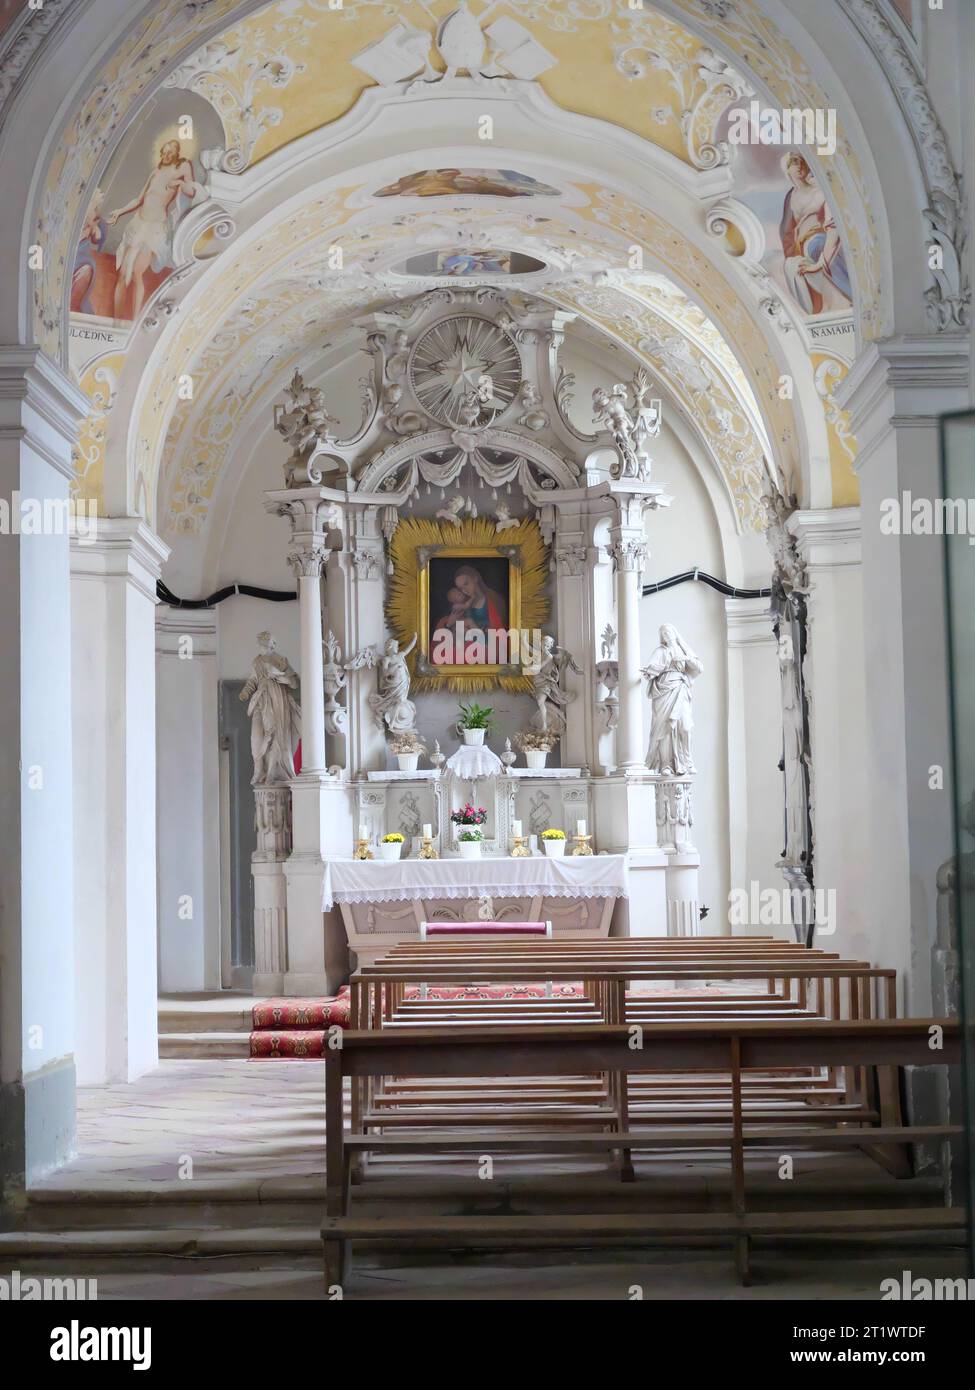 Statua di San Michele come arcangelo che spinge il diavolo sulla terra nella chiesa barocca dell'abbazia di Schöntal Foto Stock